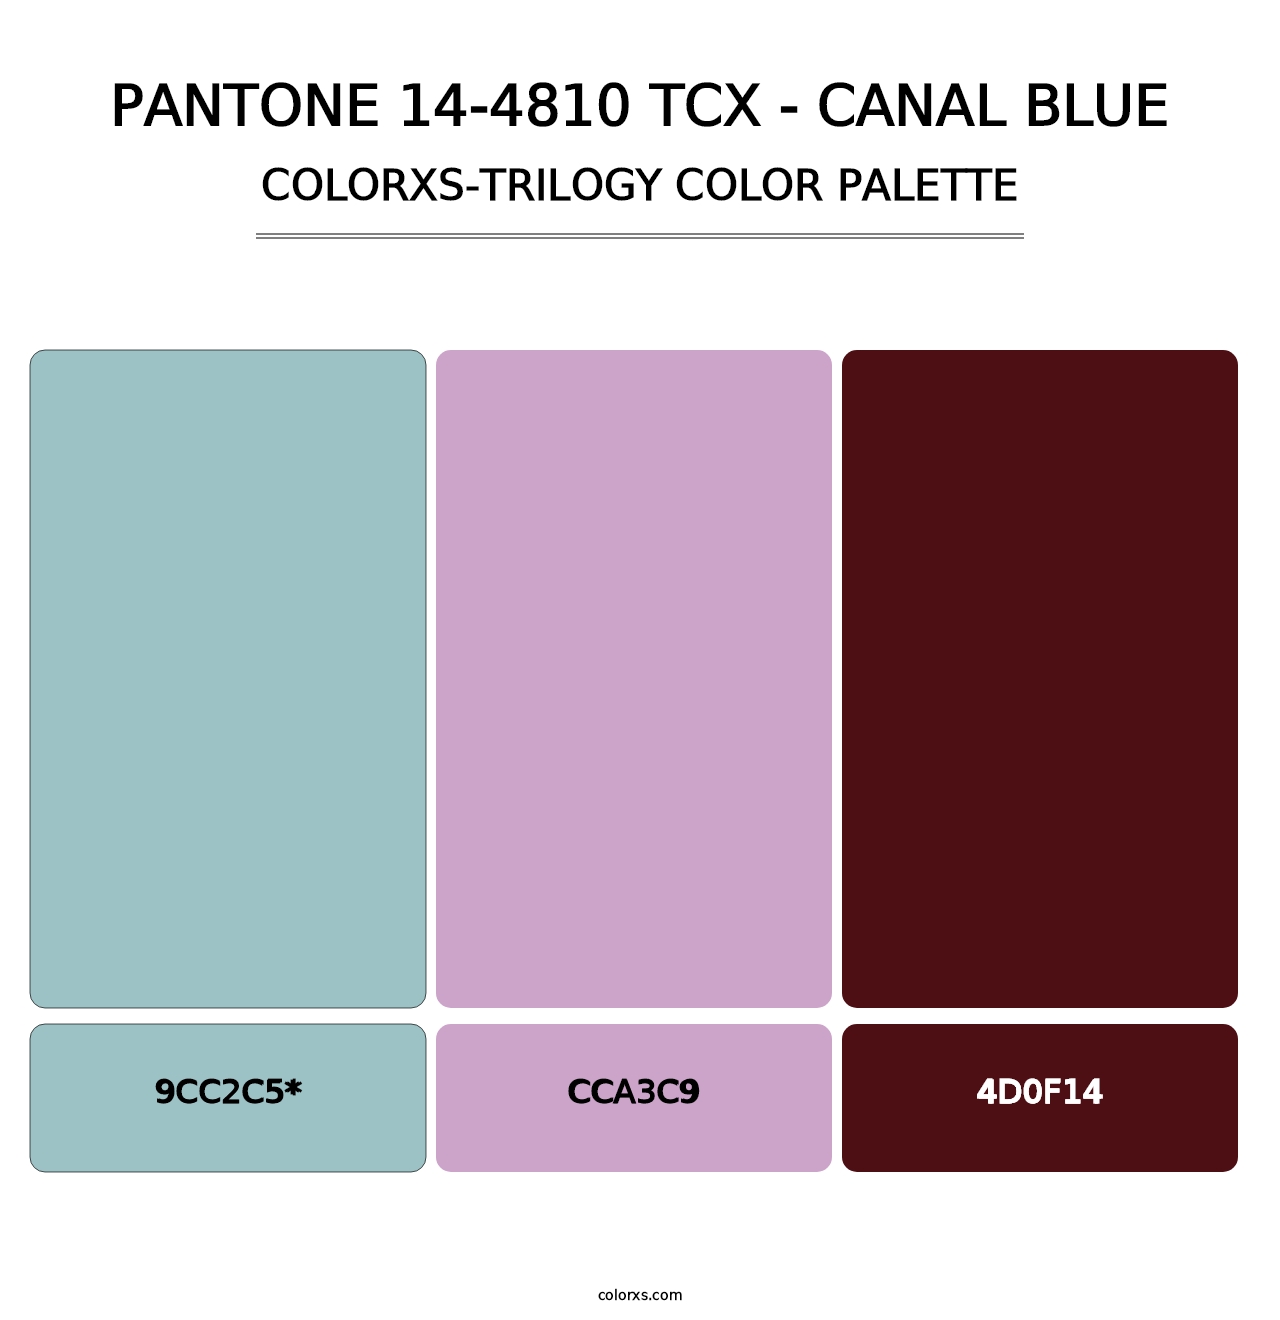 PANTONE 14-4810 TCX - Canal Blue - Colorxs Trilogy Palette